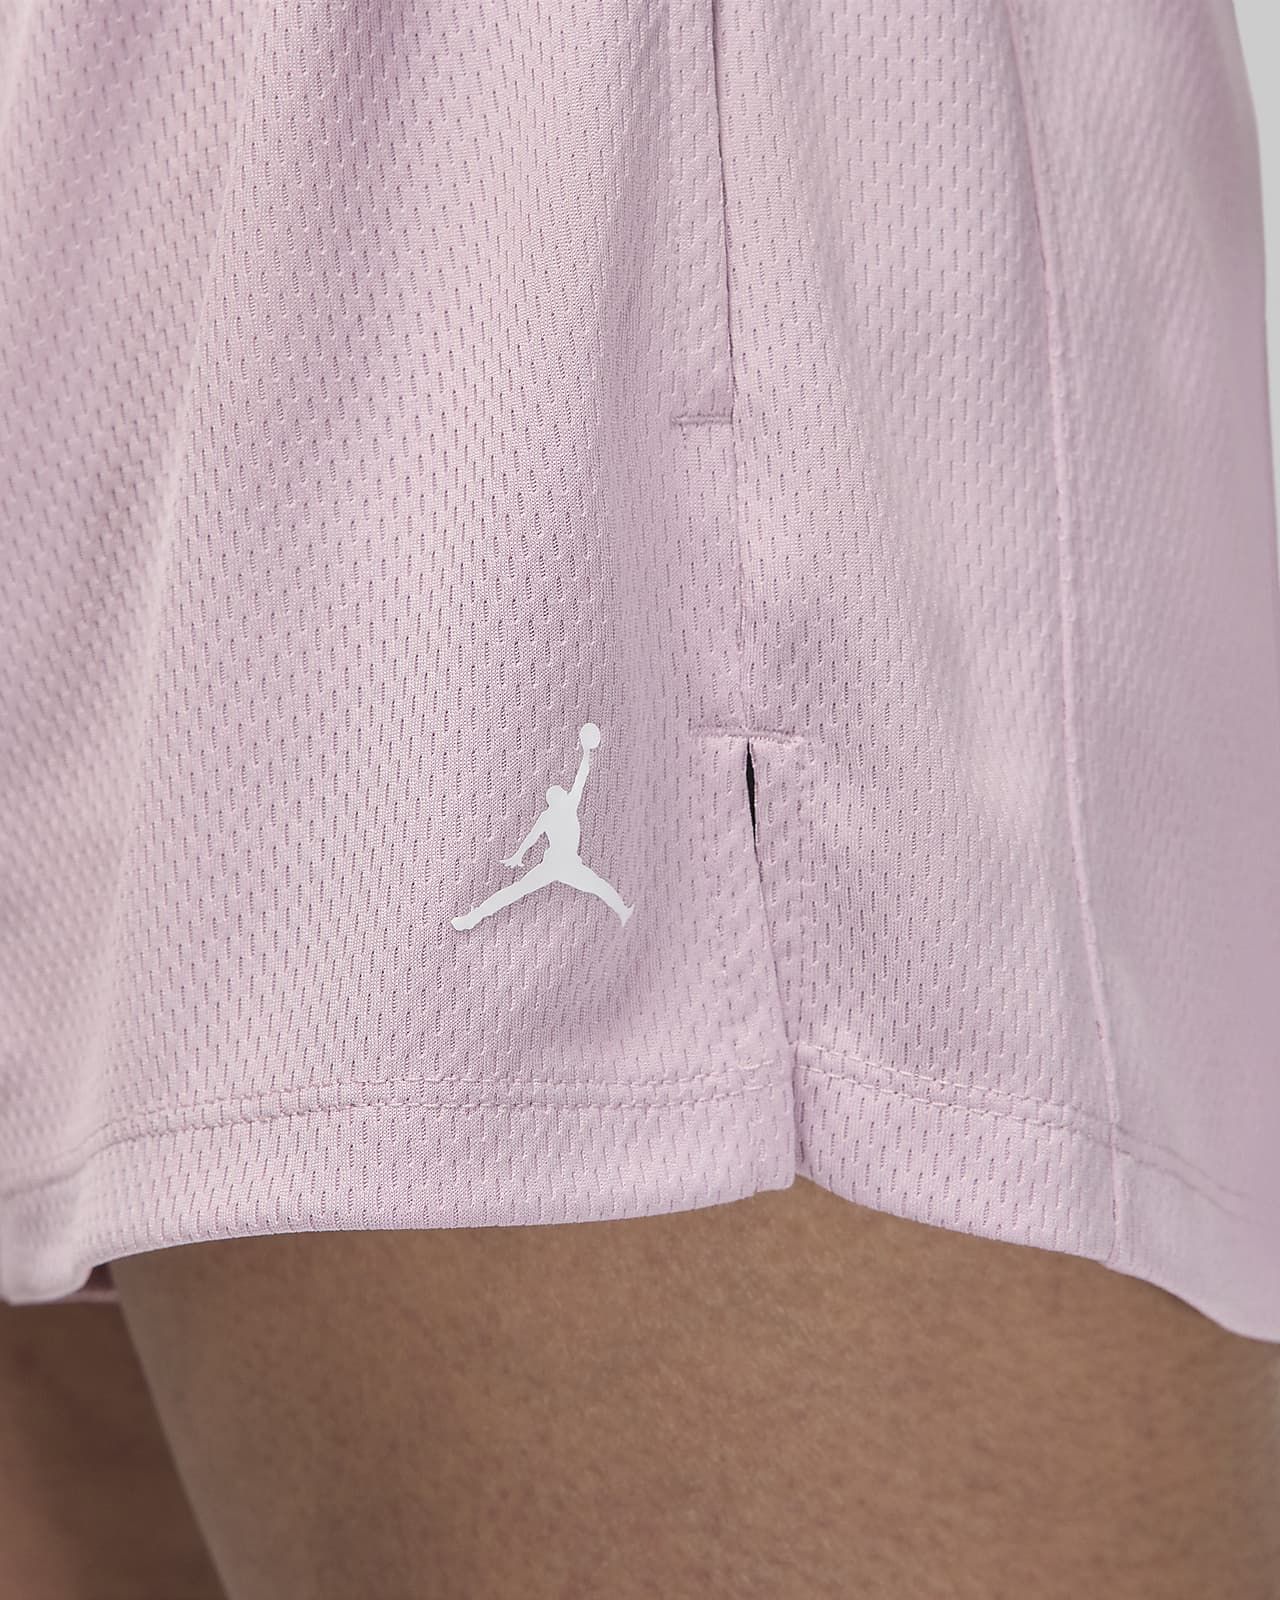 Jordan Sport Women's Shorts. Nike CA